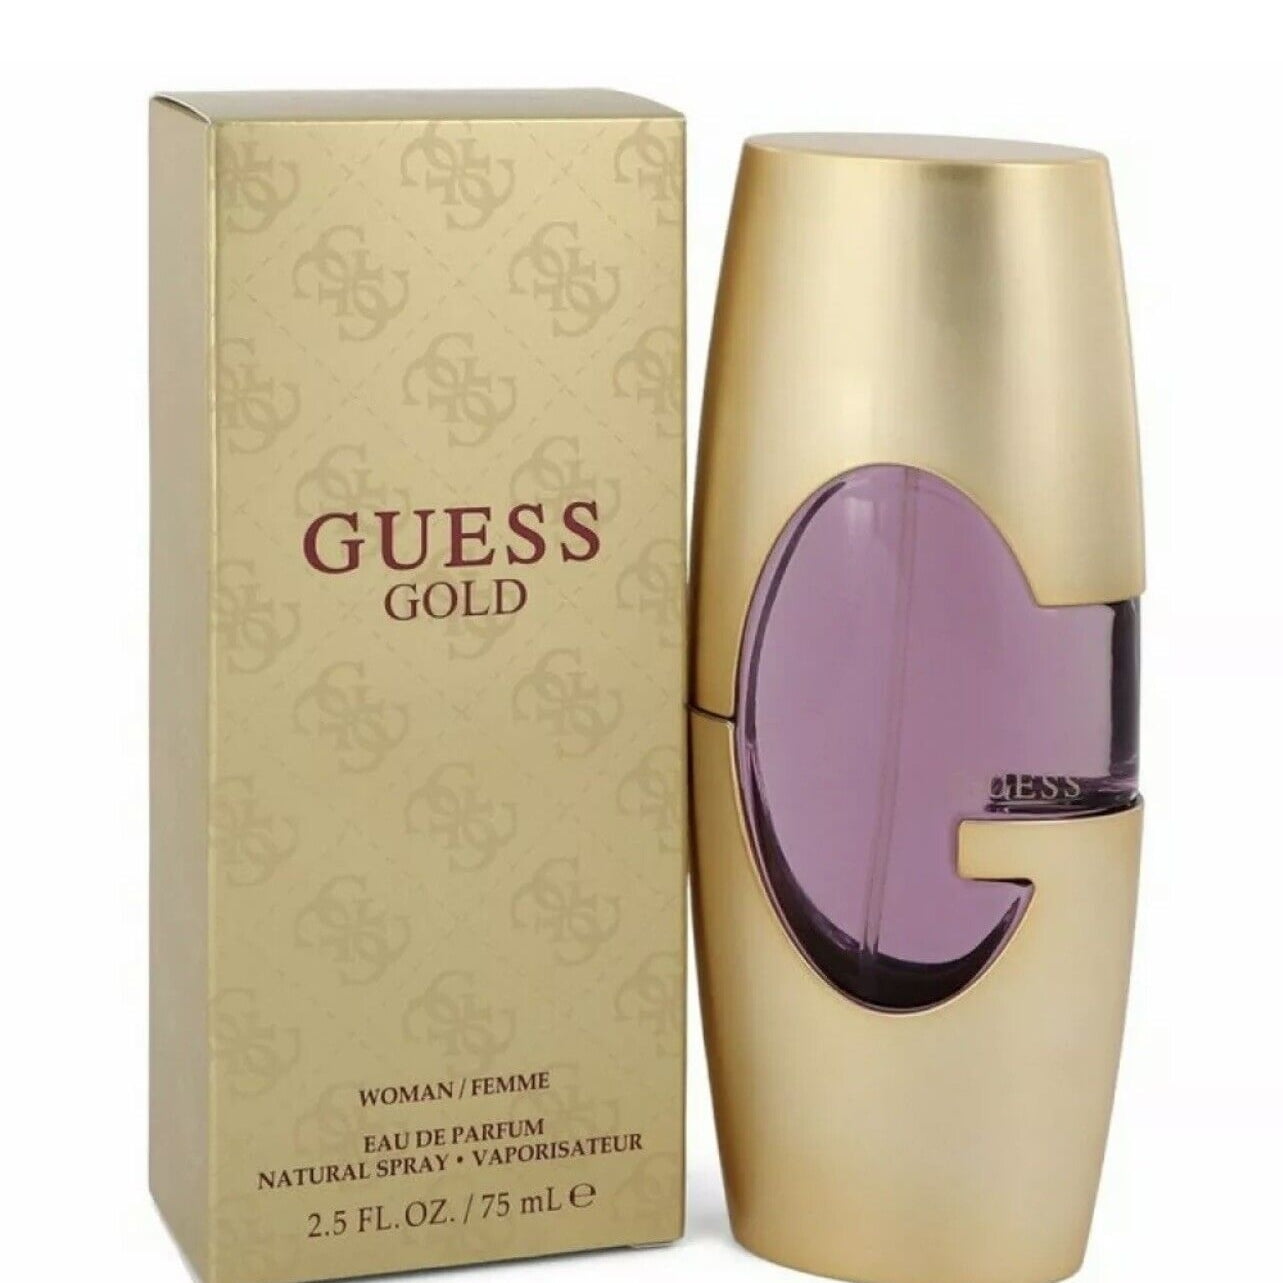 Guess Gold Eau de Parfum, Body Lotion & Travel Spray 